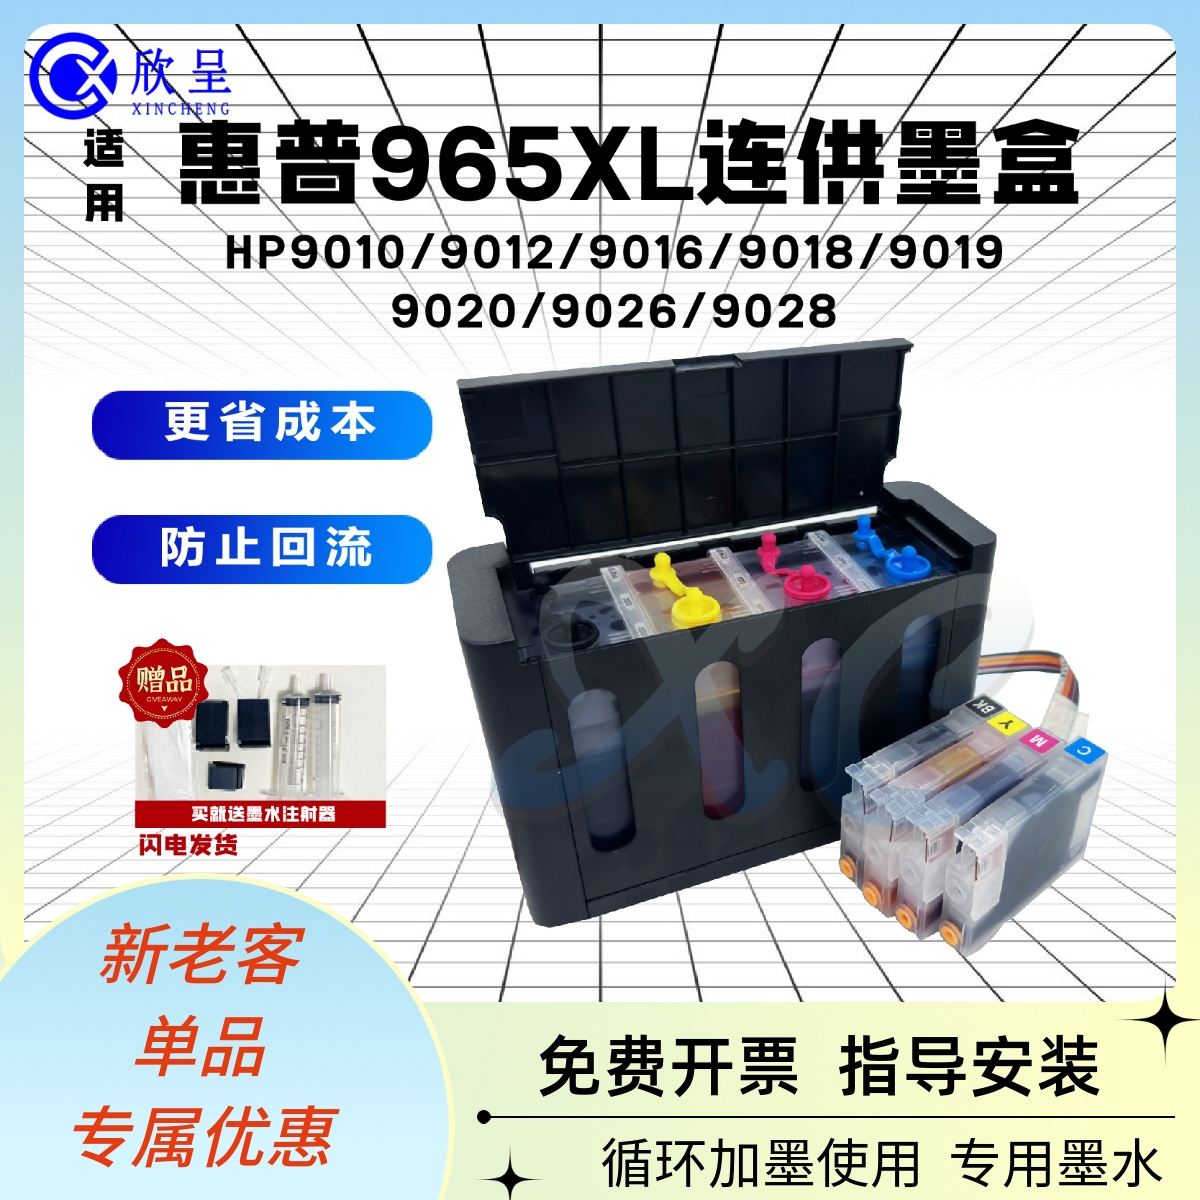 hp965/963XL9010连供墨盒系统